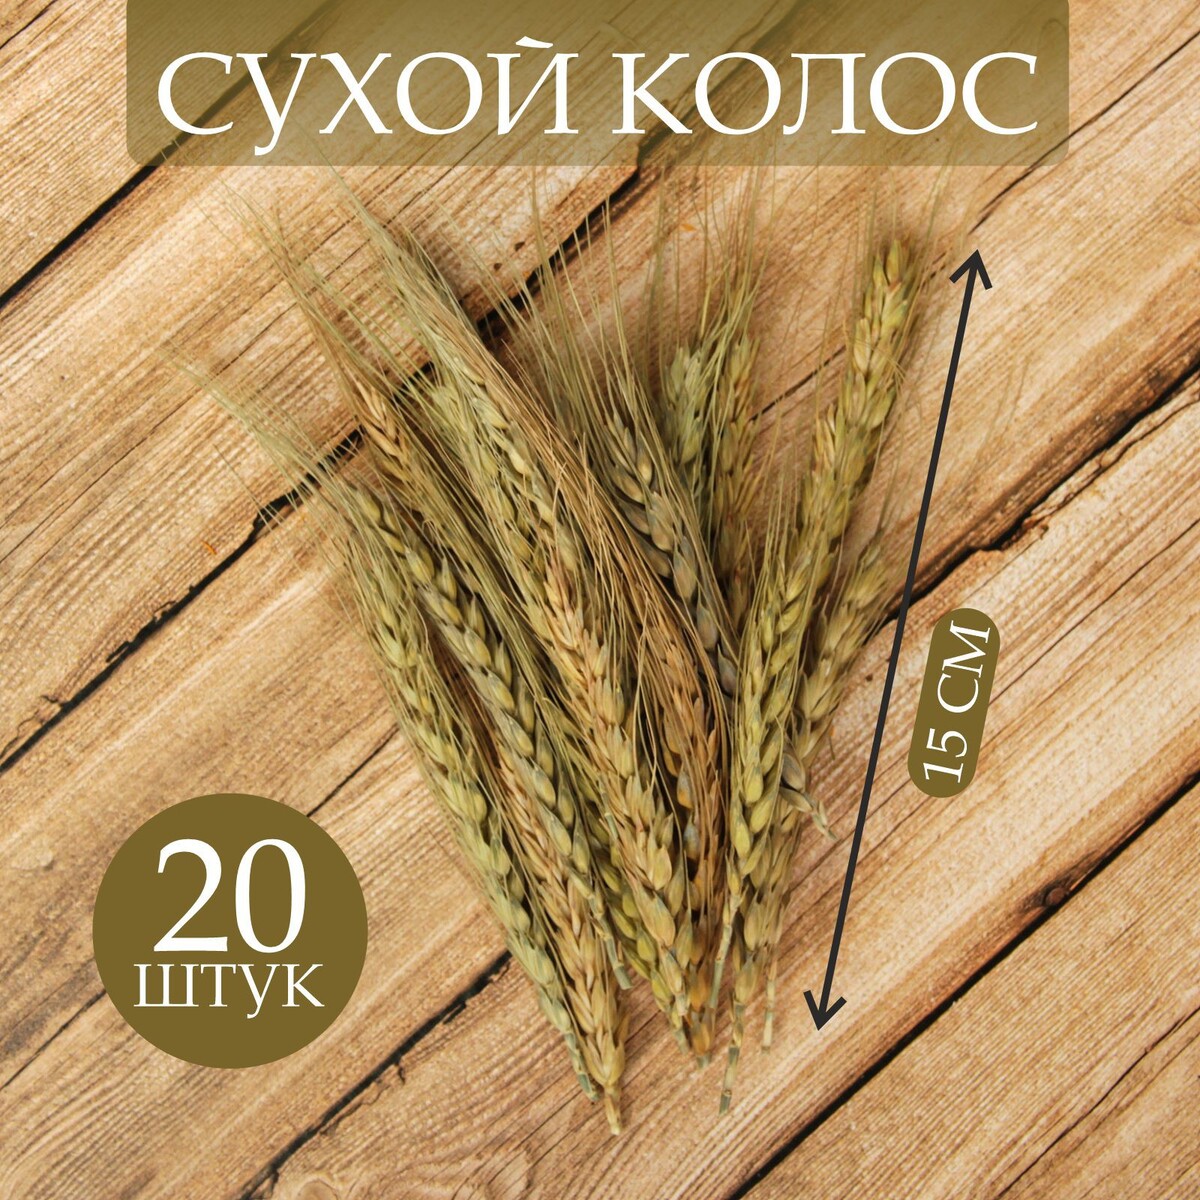 Сухой колос пшеницы, набор 20 шт. пряники оригинальные 350г колос